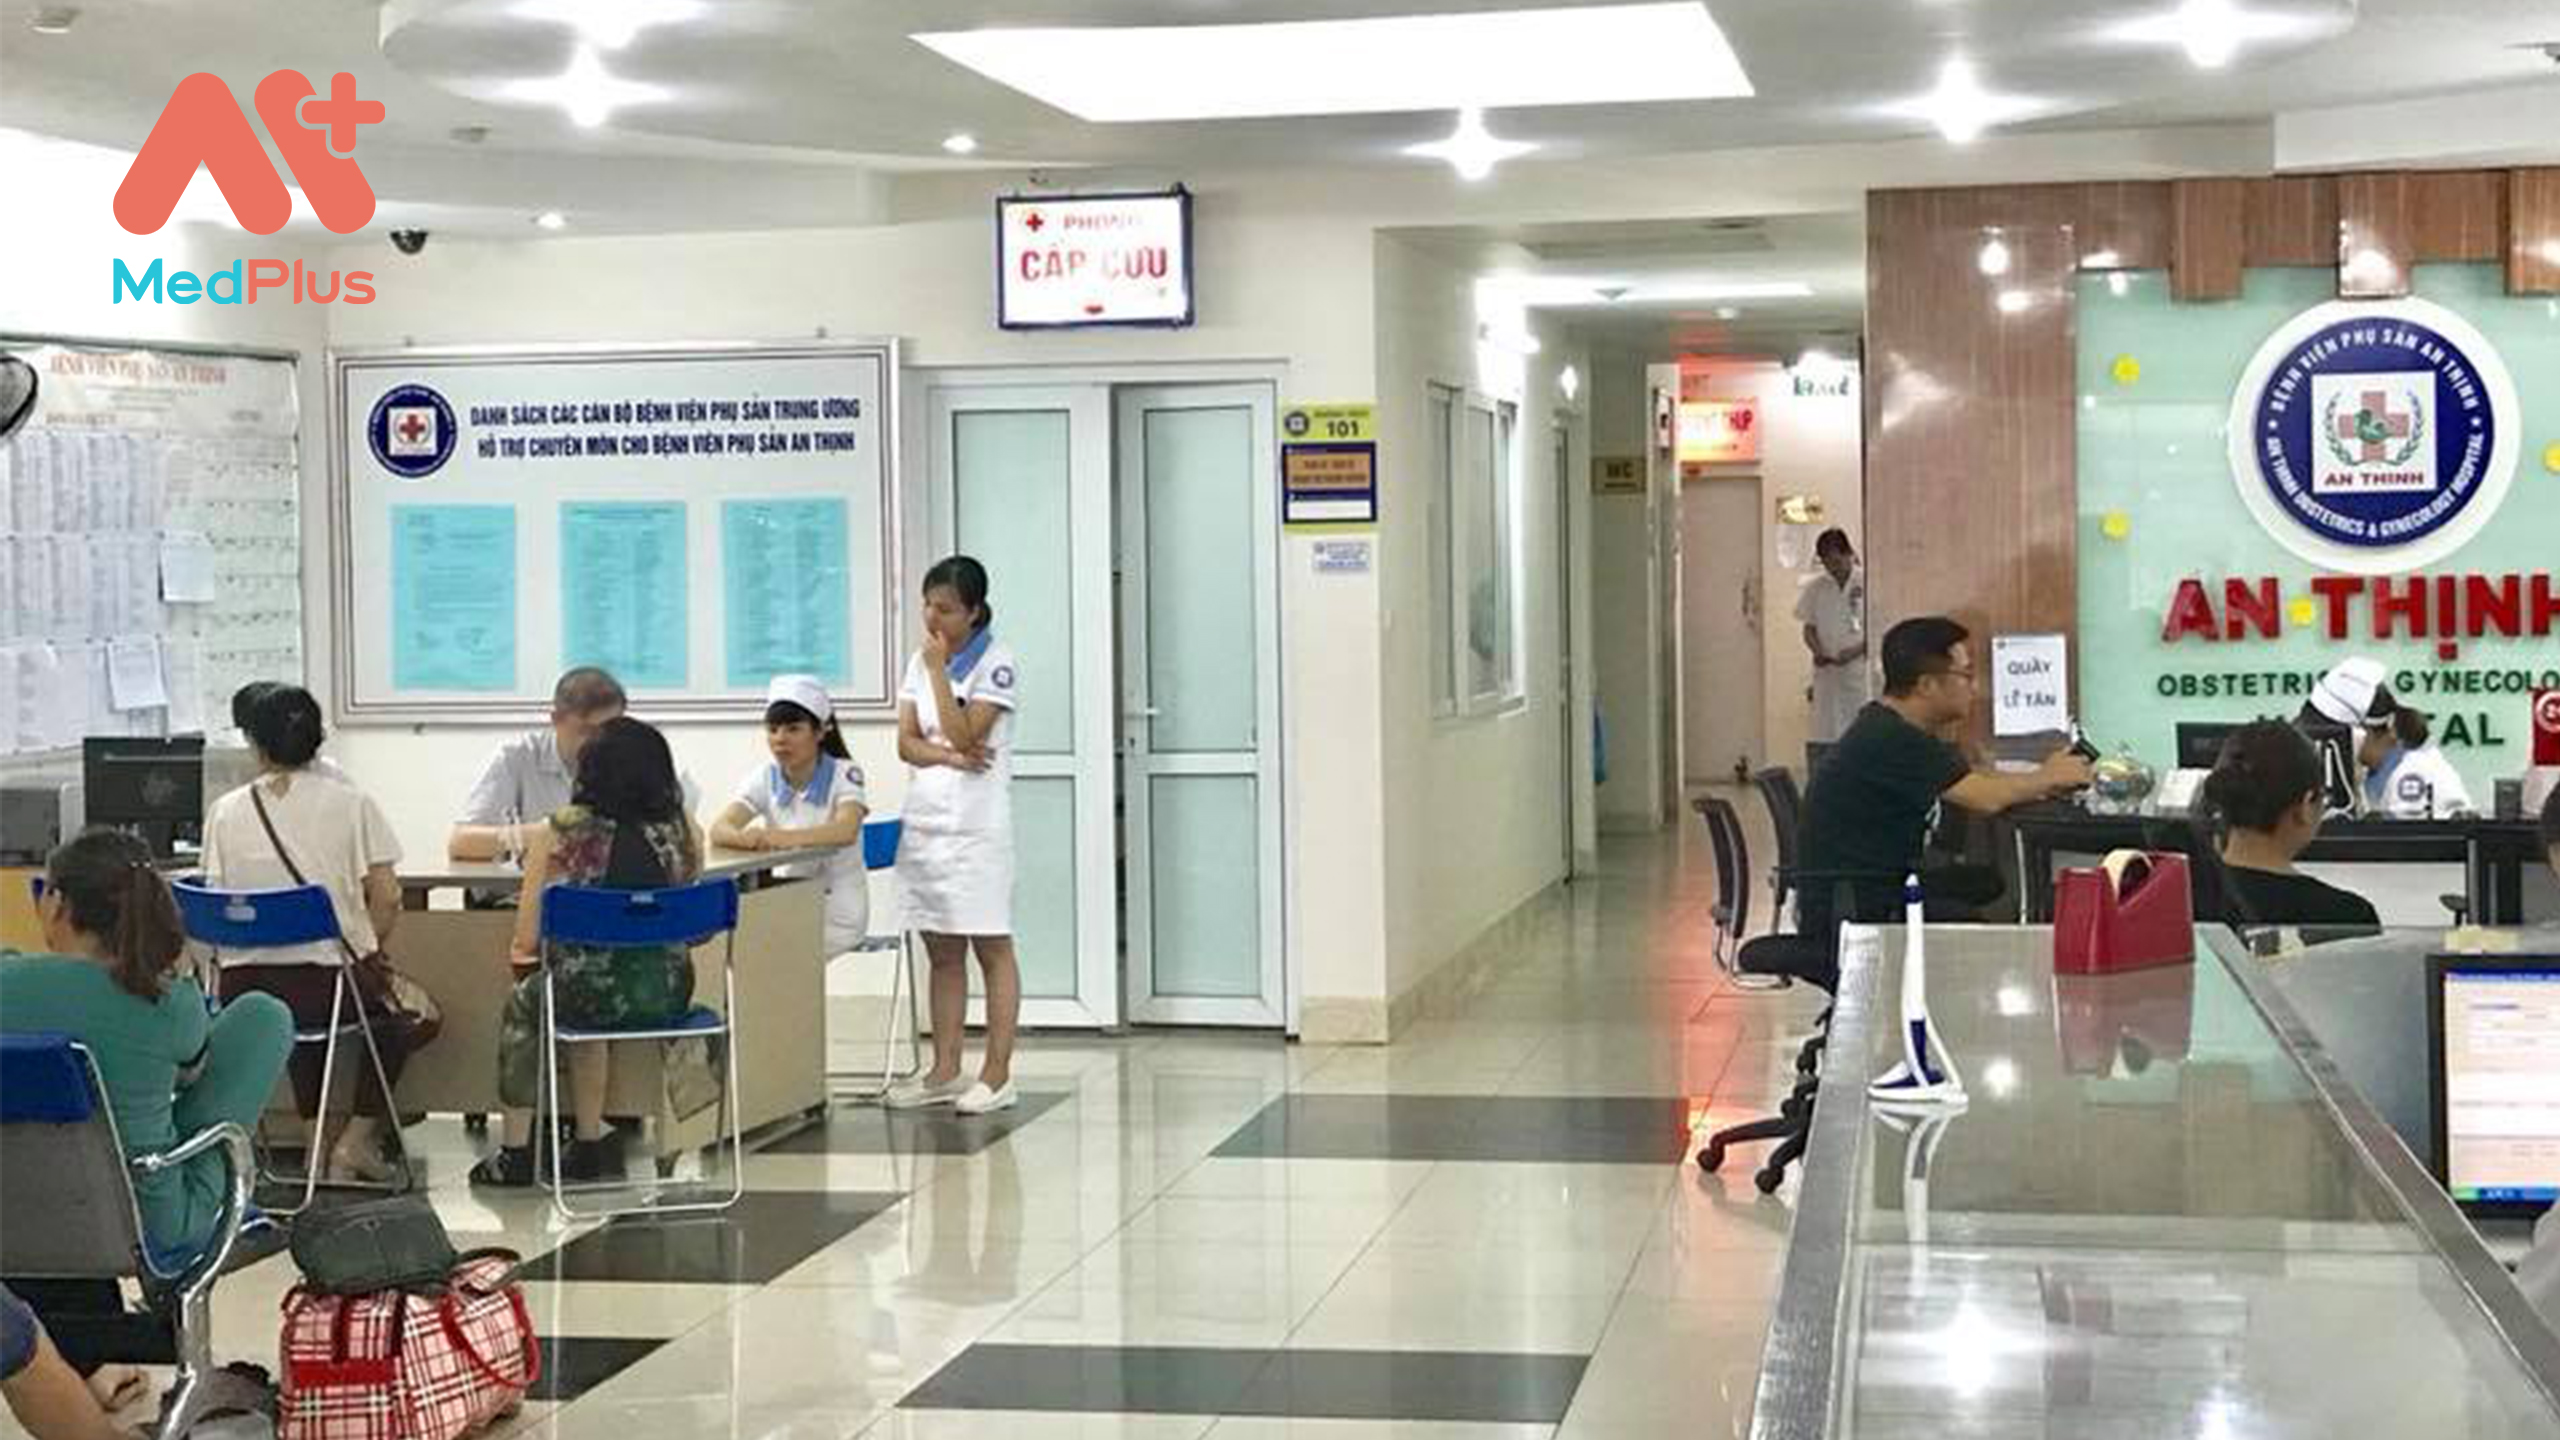 Quy trình khám chữa bệnh tại Bệnh viện An Thịnh